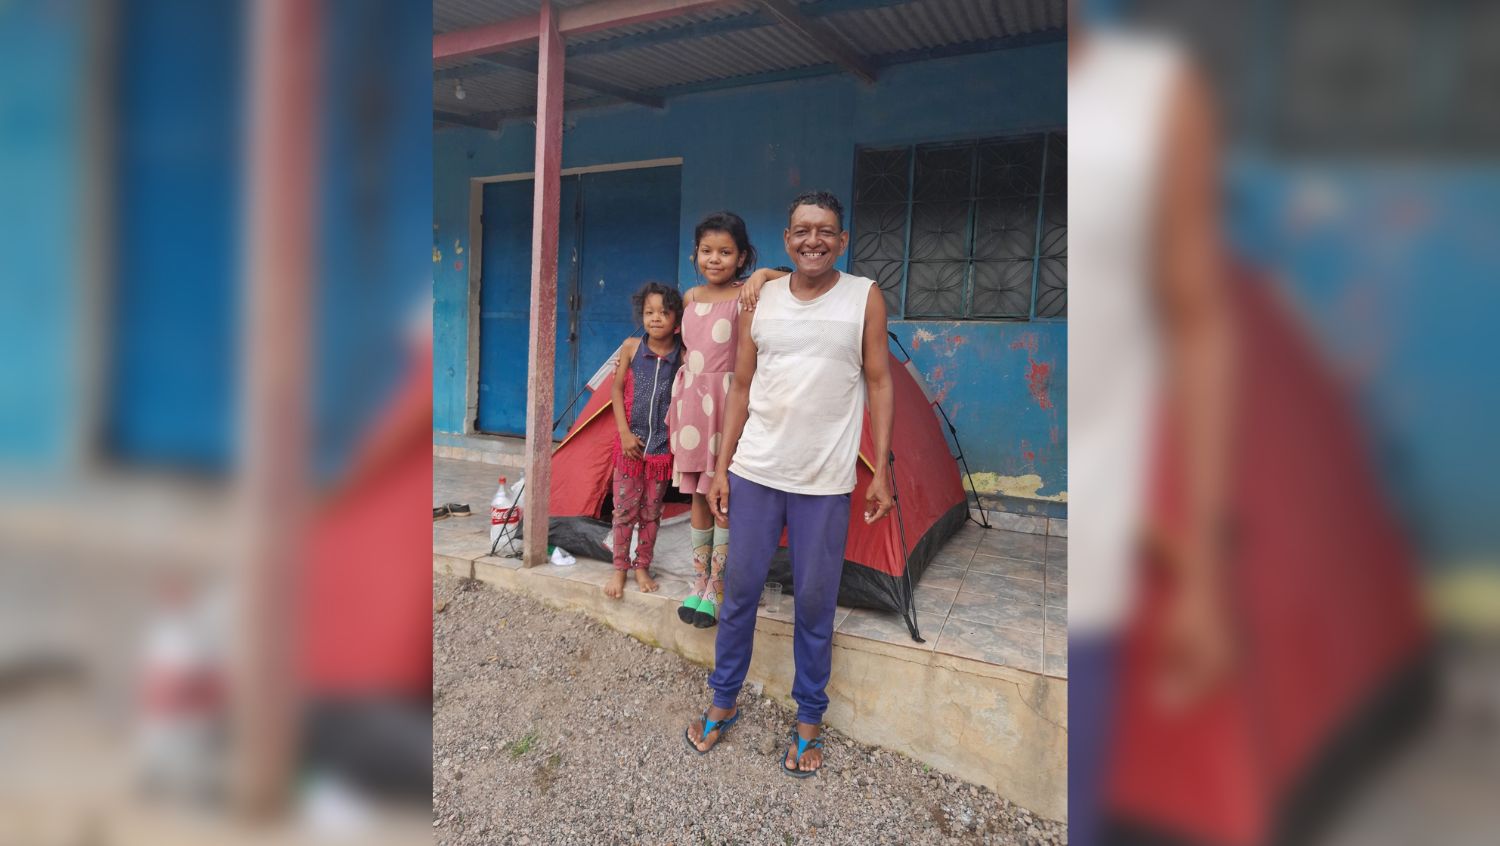 SOLIDARIEDADE: Família que mora em barraca em Porto Velho pede ajuda com roupas e alimentos